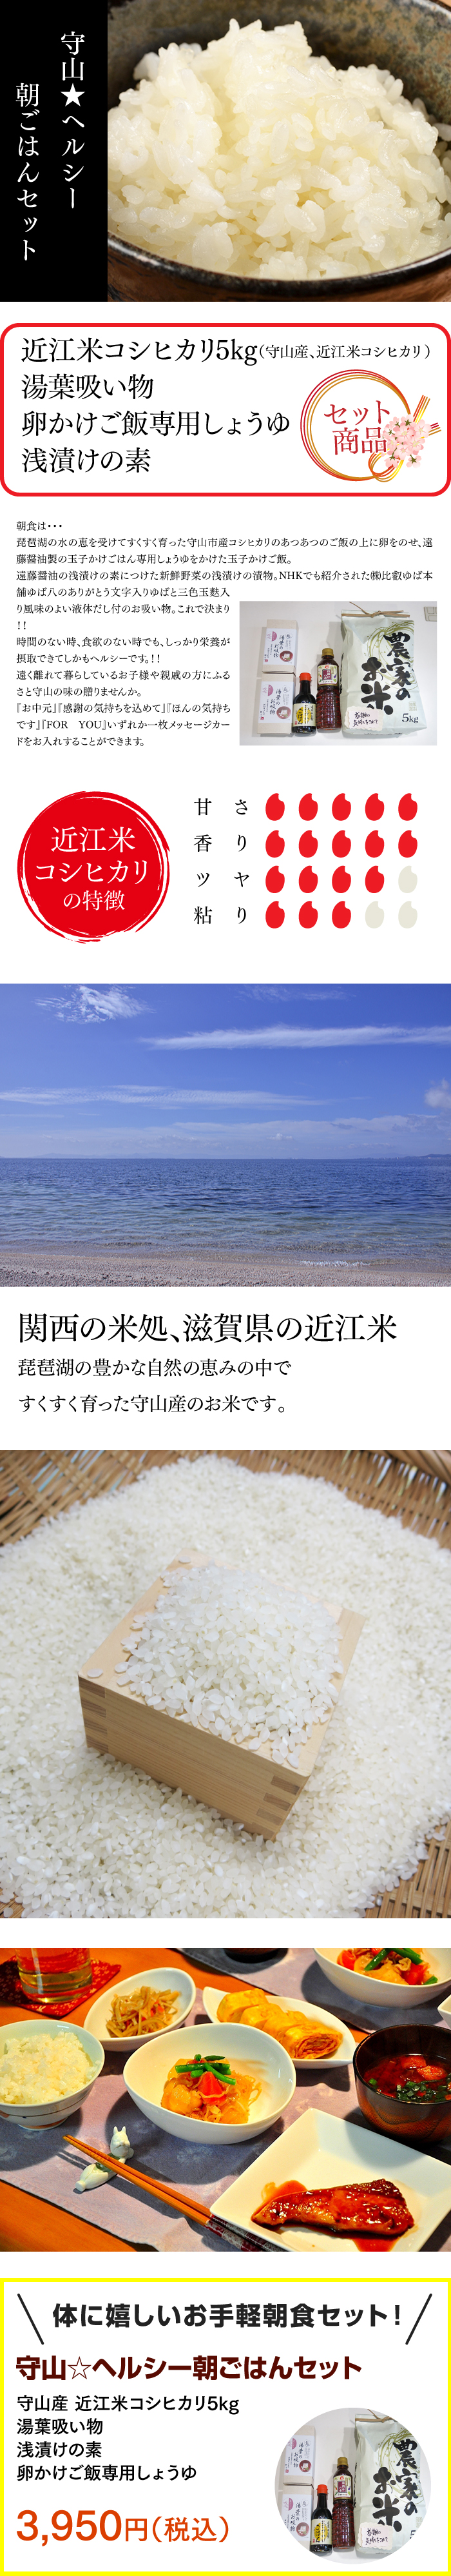 関西の米処、滋賀県の近江米 琵琶湖の豊かな自然の恵みの中で すくすく育った守山産のお米です。